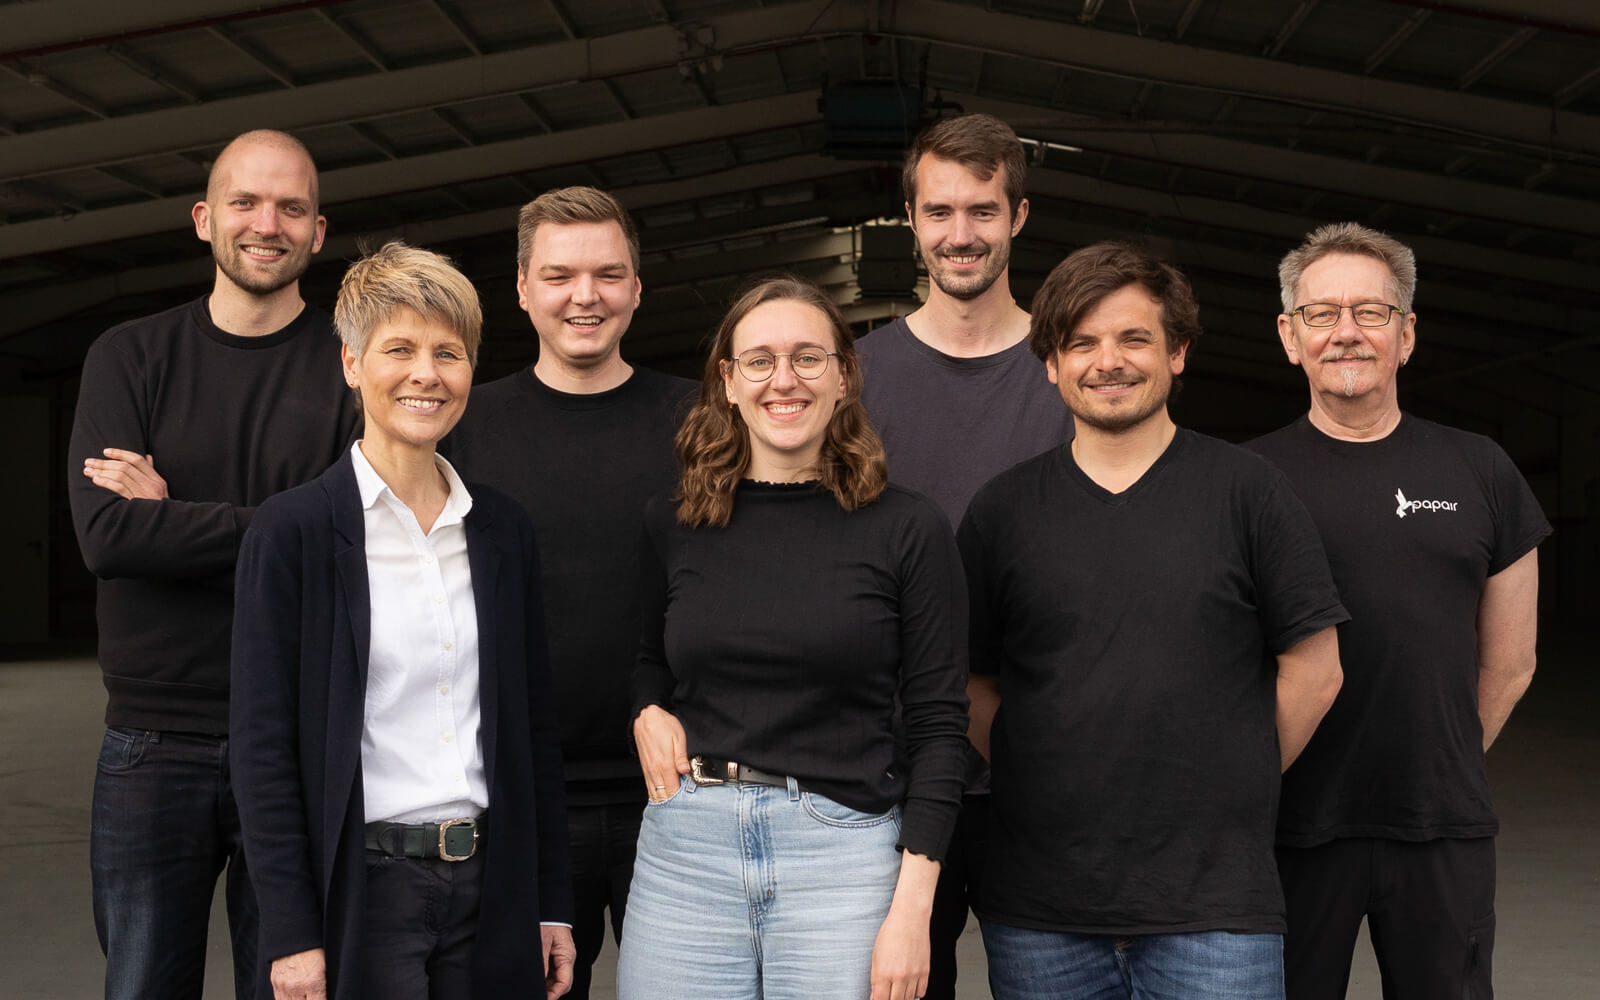 Das Team aus sieben Personen des Startups Papair aus Hannover steht vor der Produktionshalle in Rethem und lächelt in die Kamera